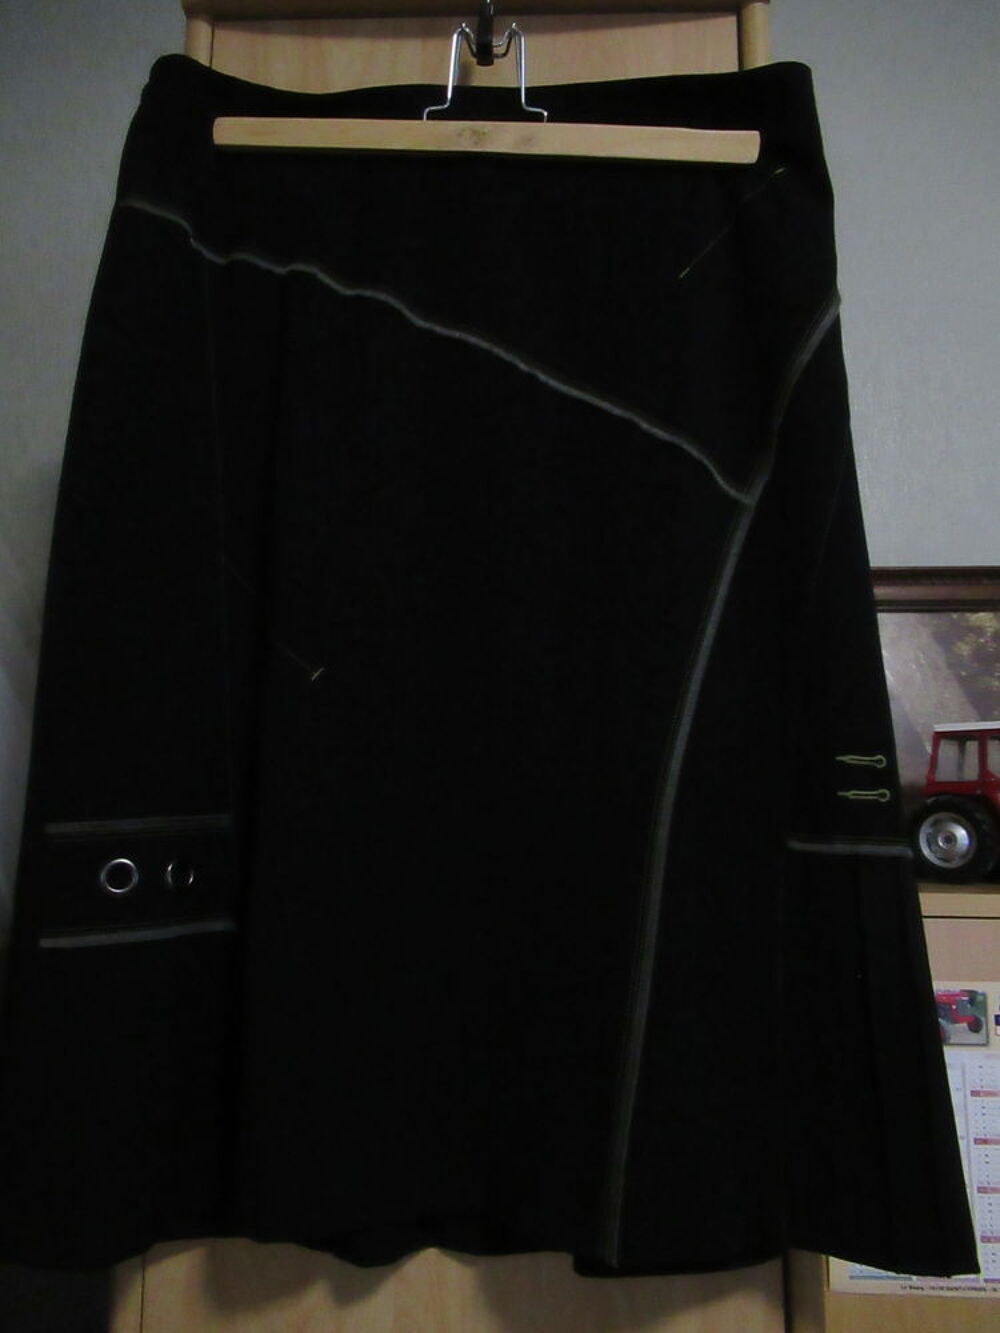 Tailleur veste et jupe noire taille 46-48 Vtements